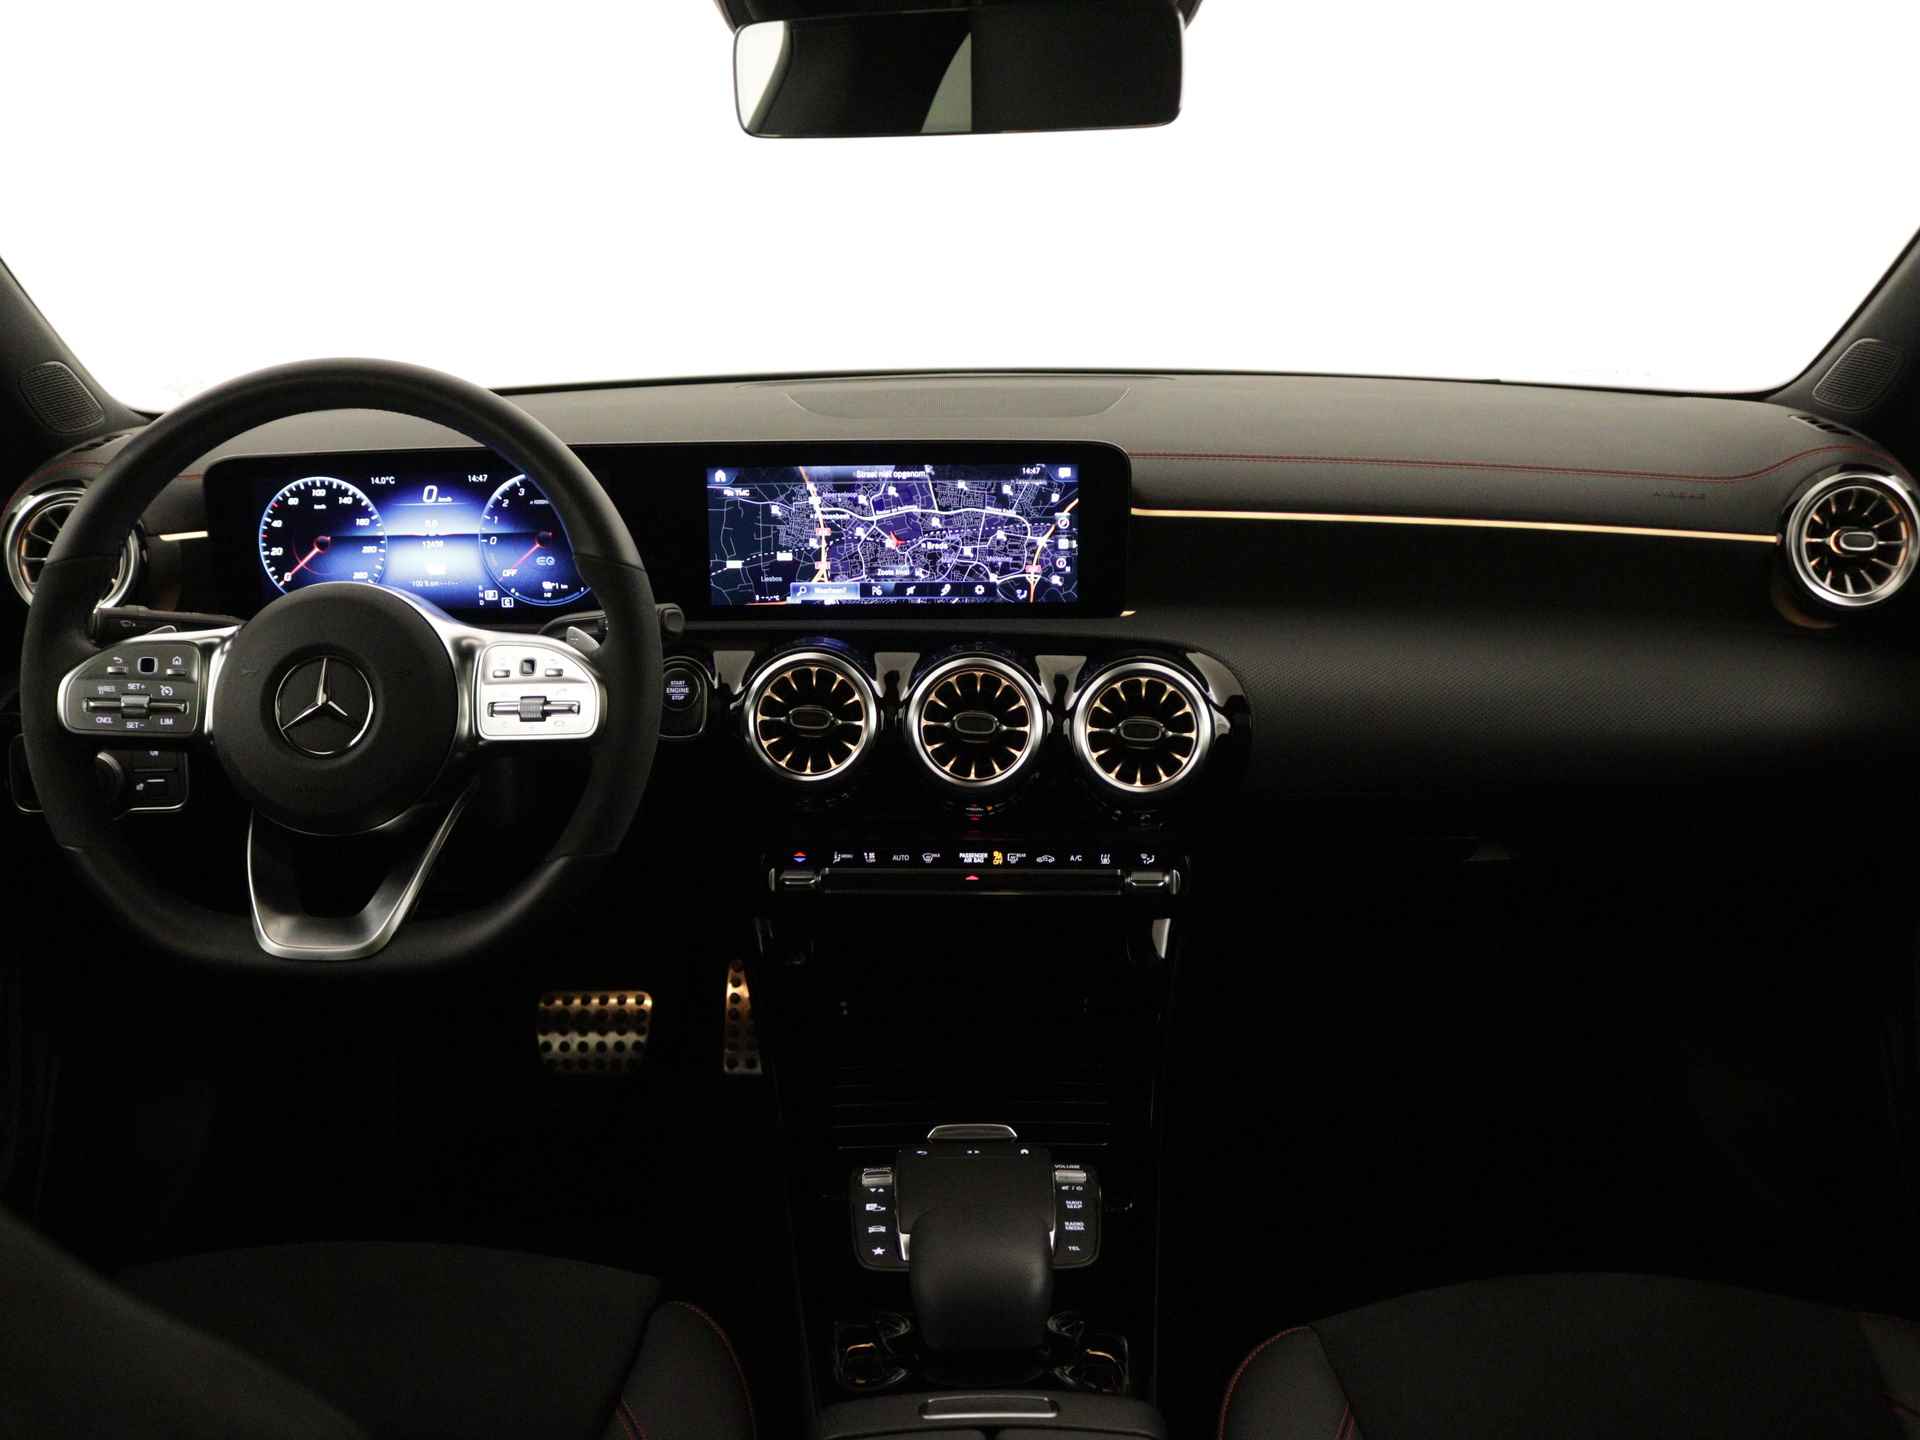 Mercedes-Benz CLA-Klasse 250 e AMG Plug-In Hybride Limited | Panoramadak | Lichtmetalen 5 spaaks AMG velgen | MBUX wide screen | Navigatie | Parking support | Inclusief 24 maanden MB Certified garantie voor Europa. - 6/45